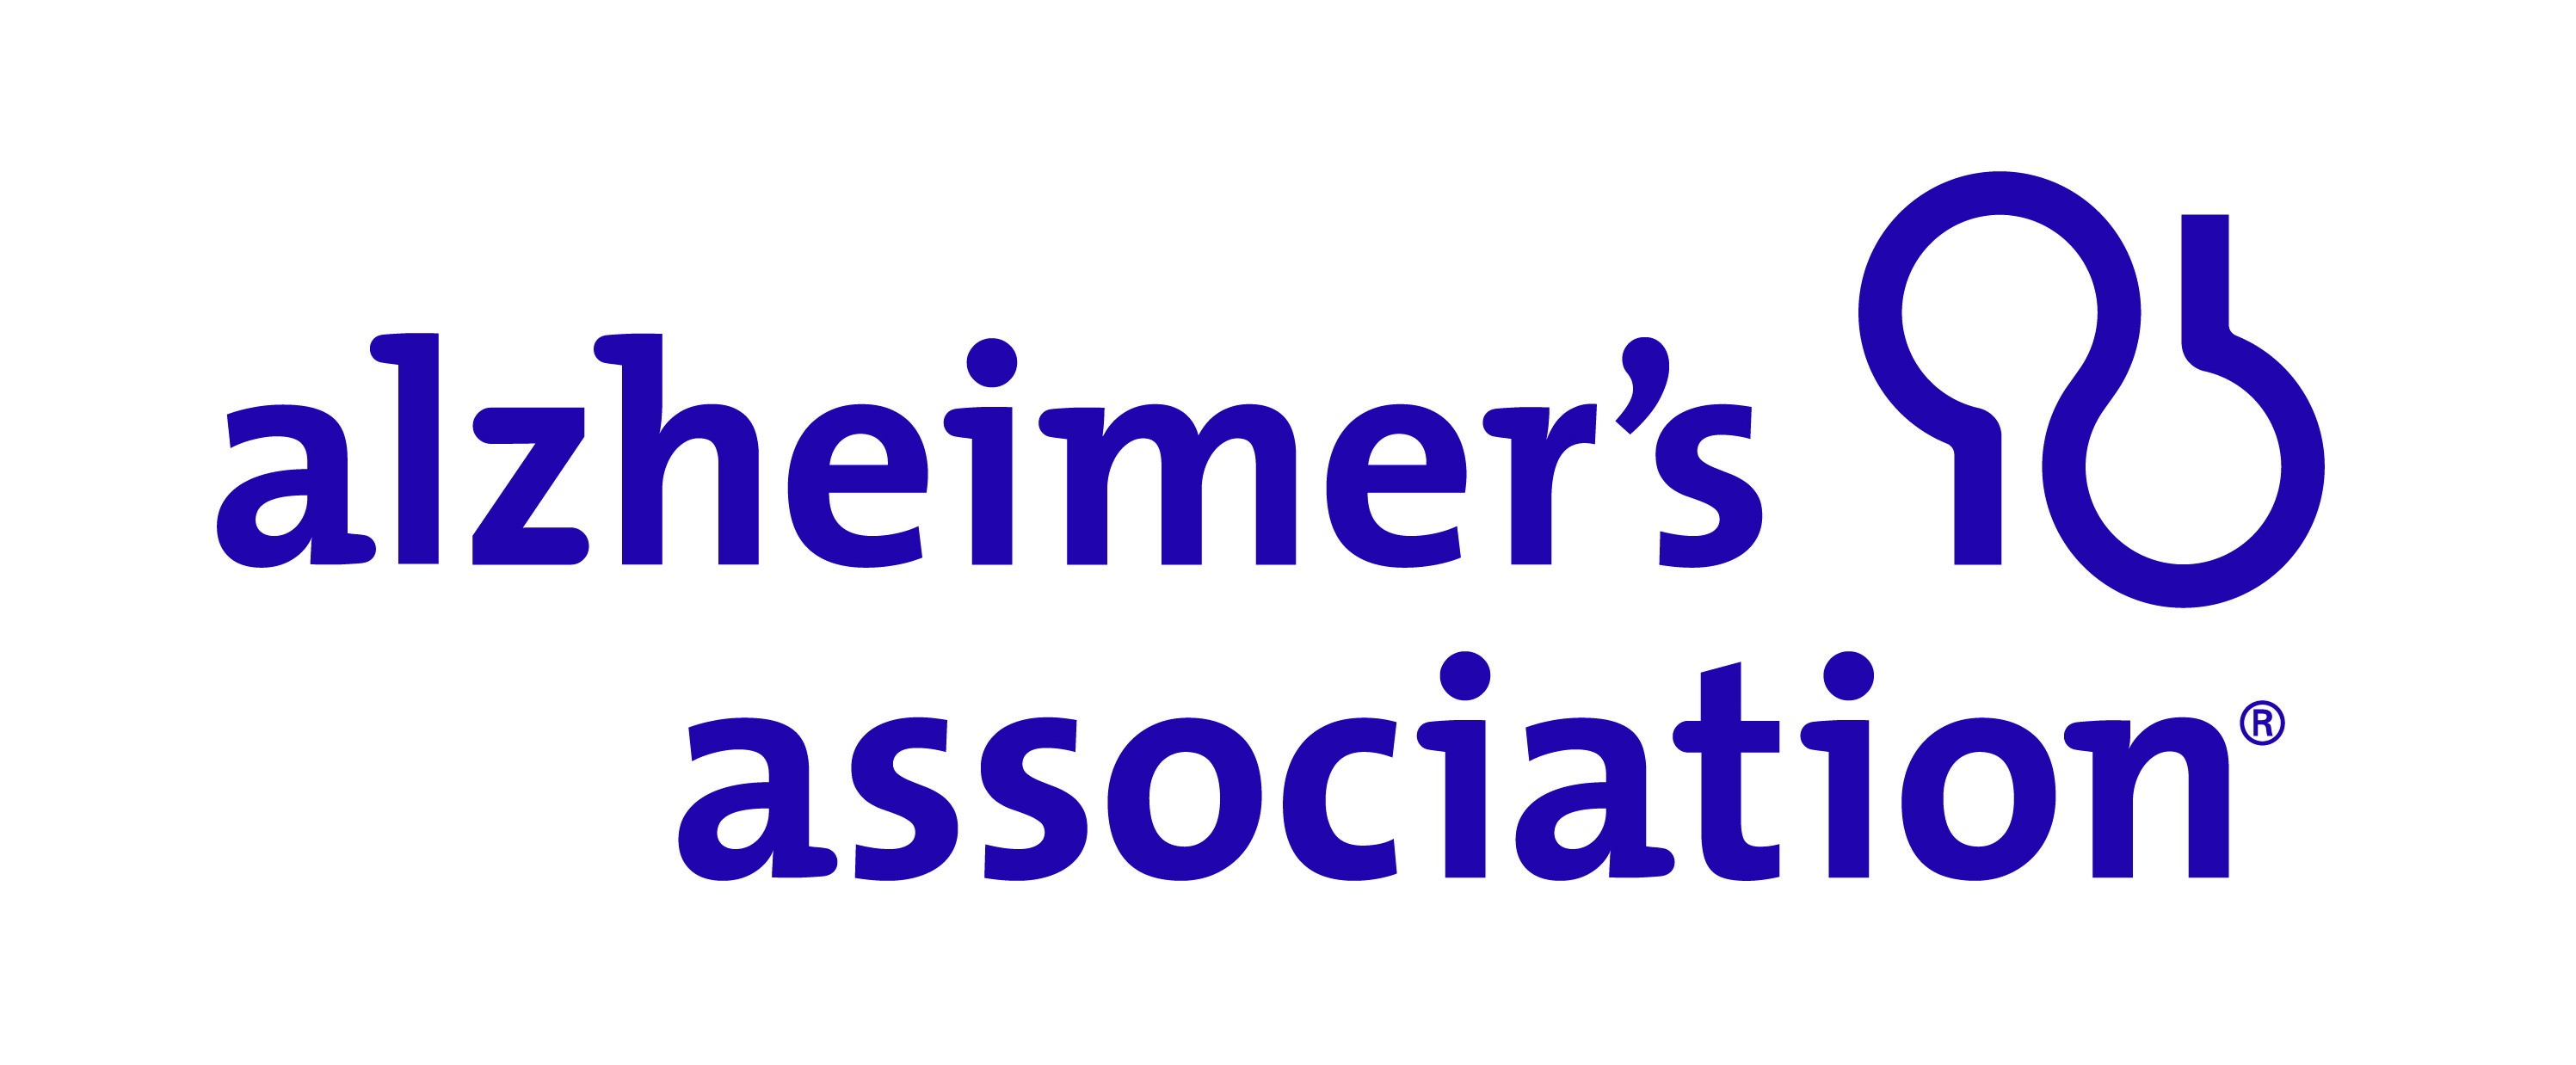 alzheimers association logo